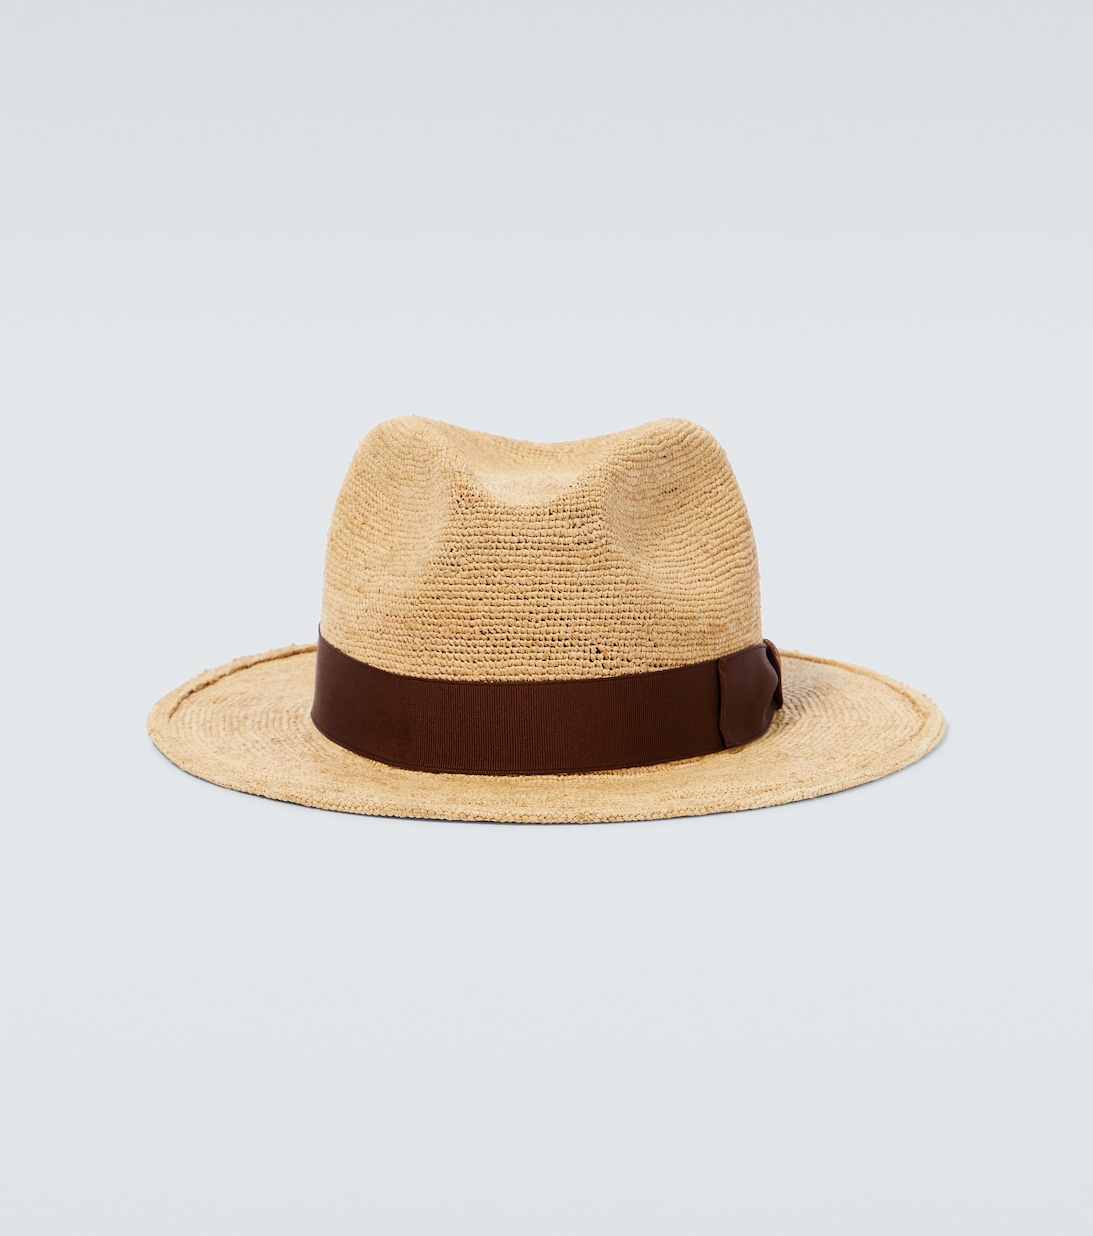 Соломенная шляпа панама Borsalino, бежевый соломенная шляпа бежевый